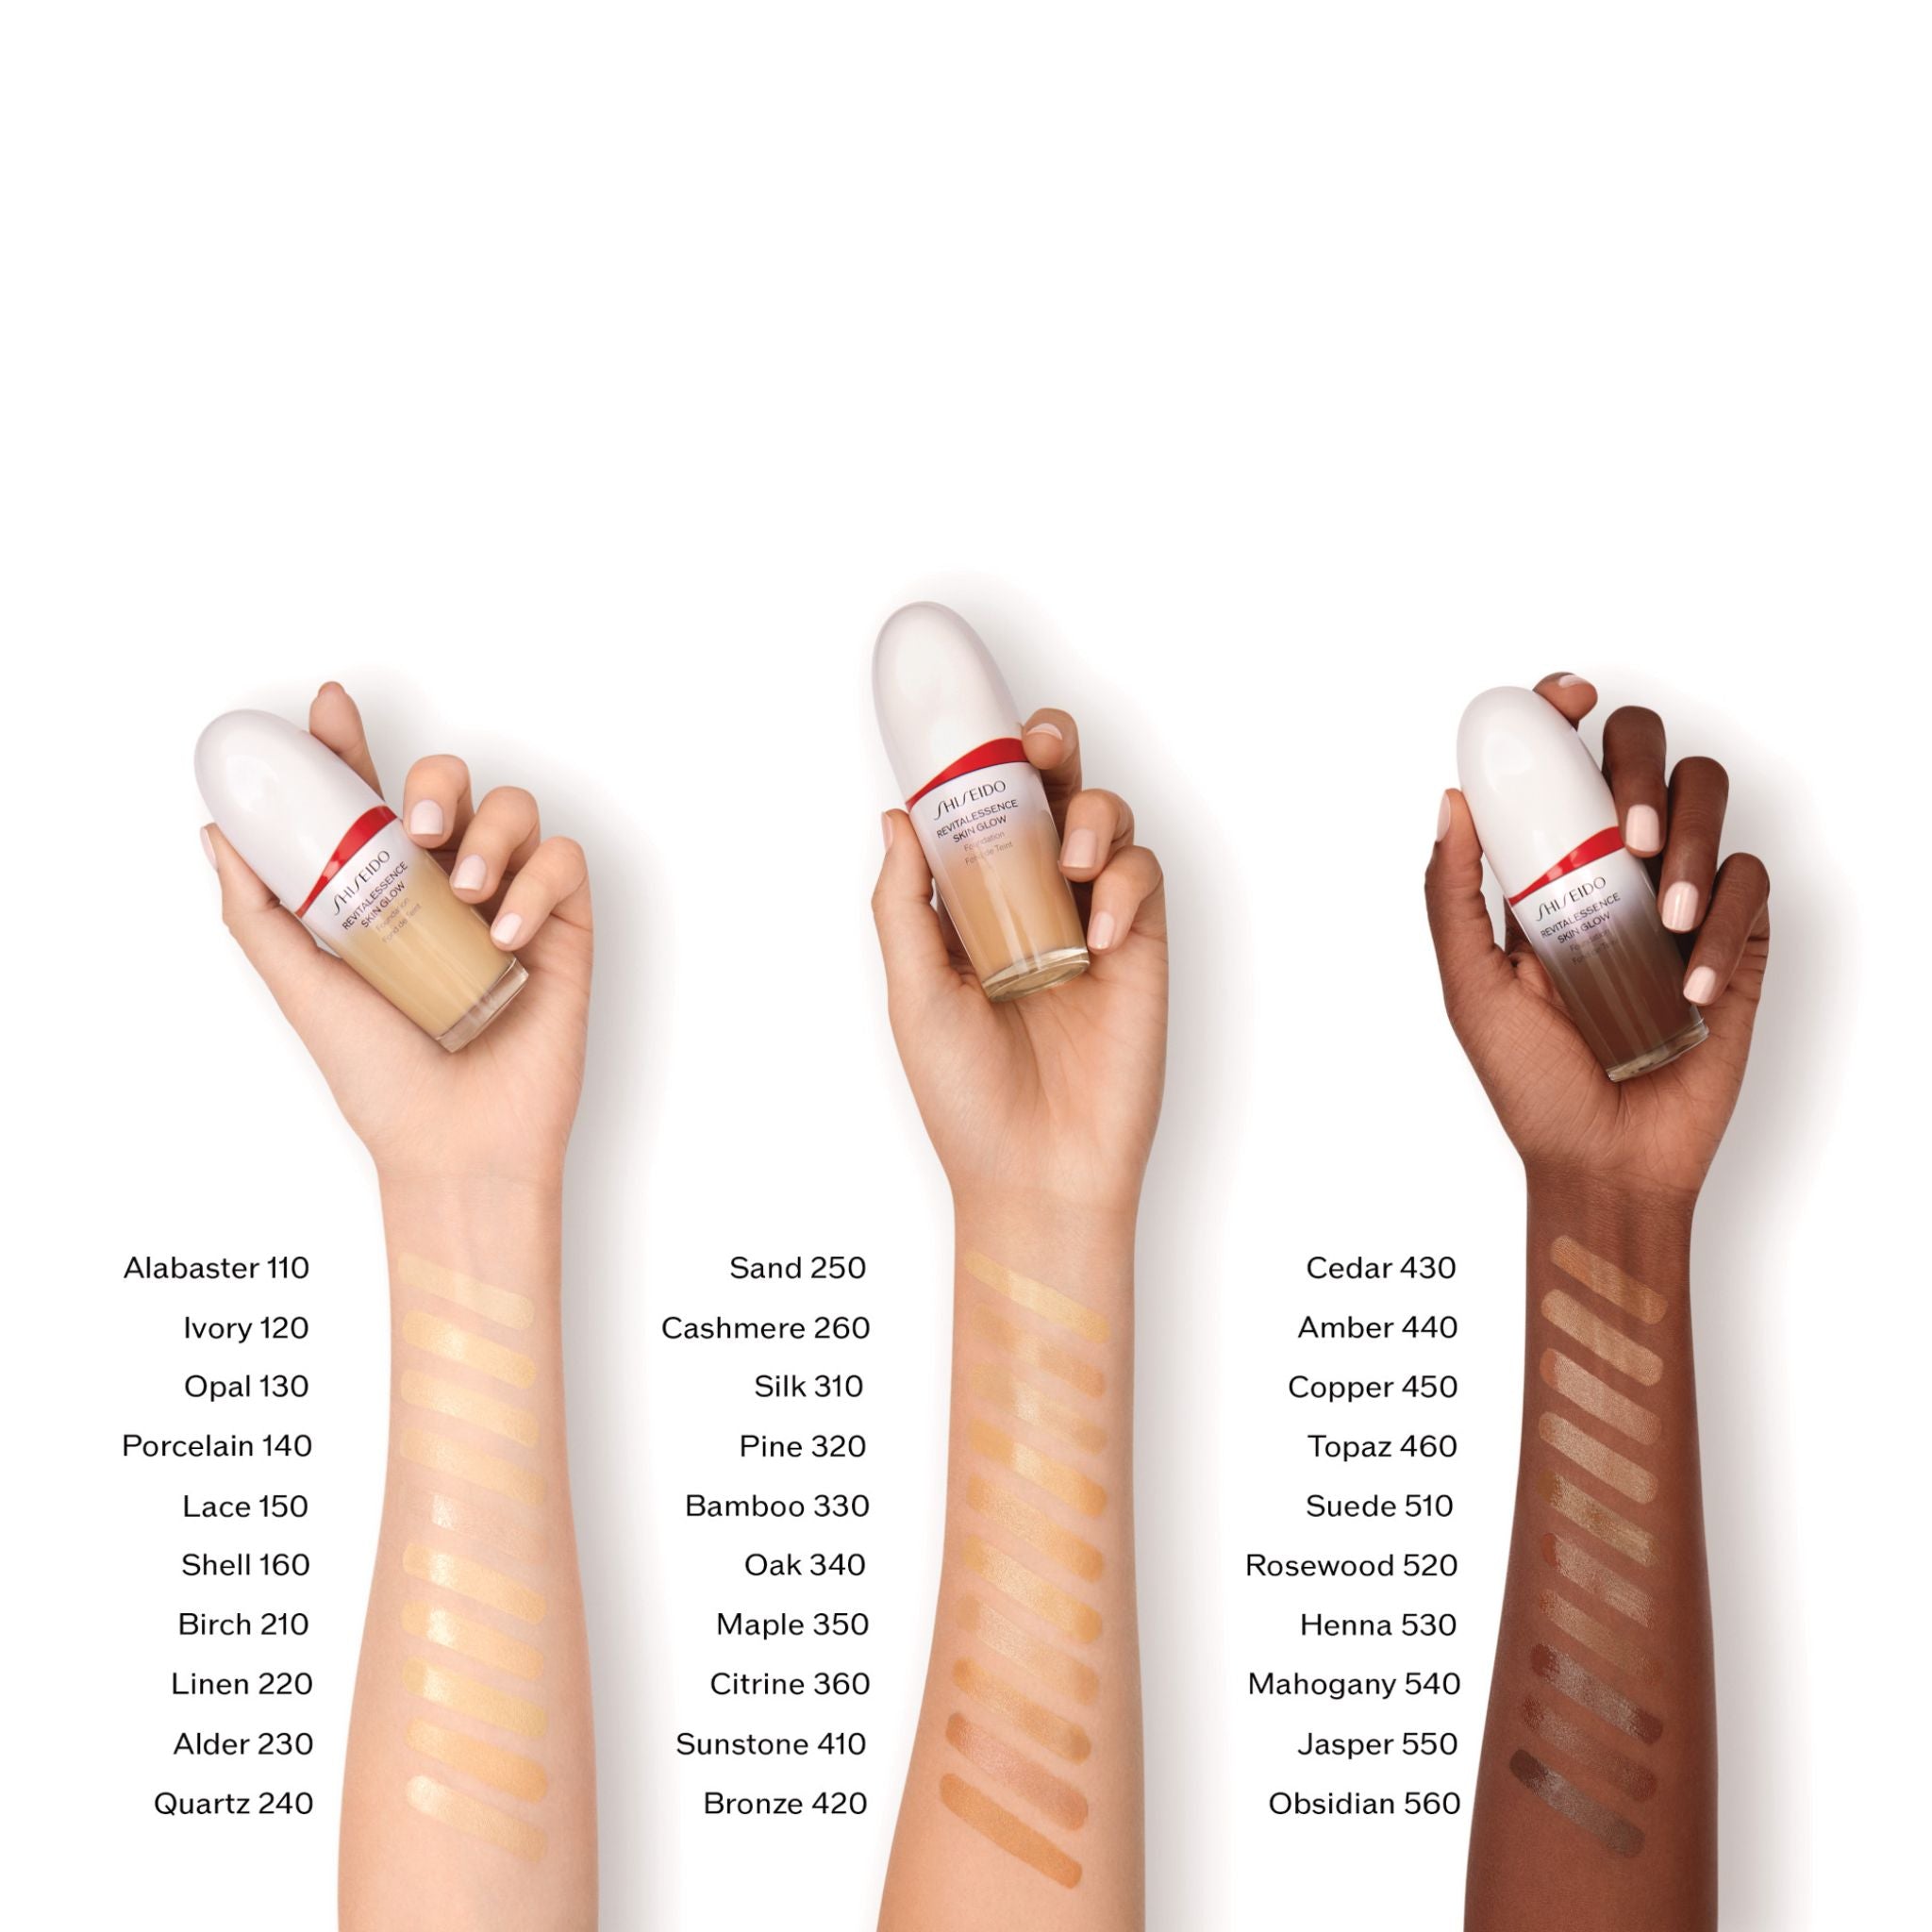 Shiseido Makeup RevitalEssence Skin Glow Foundation in 310 Silk (30ml)